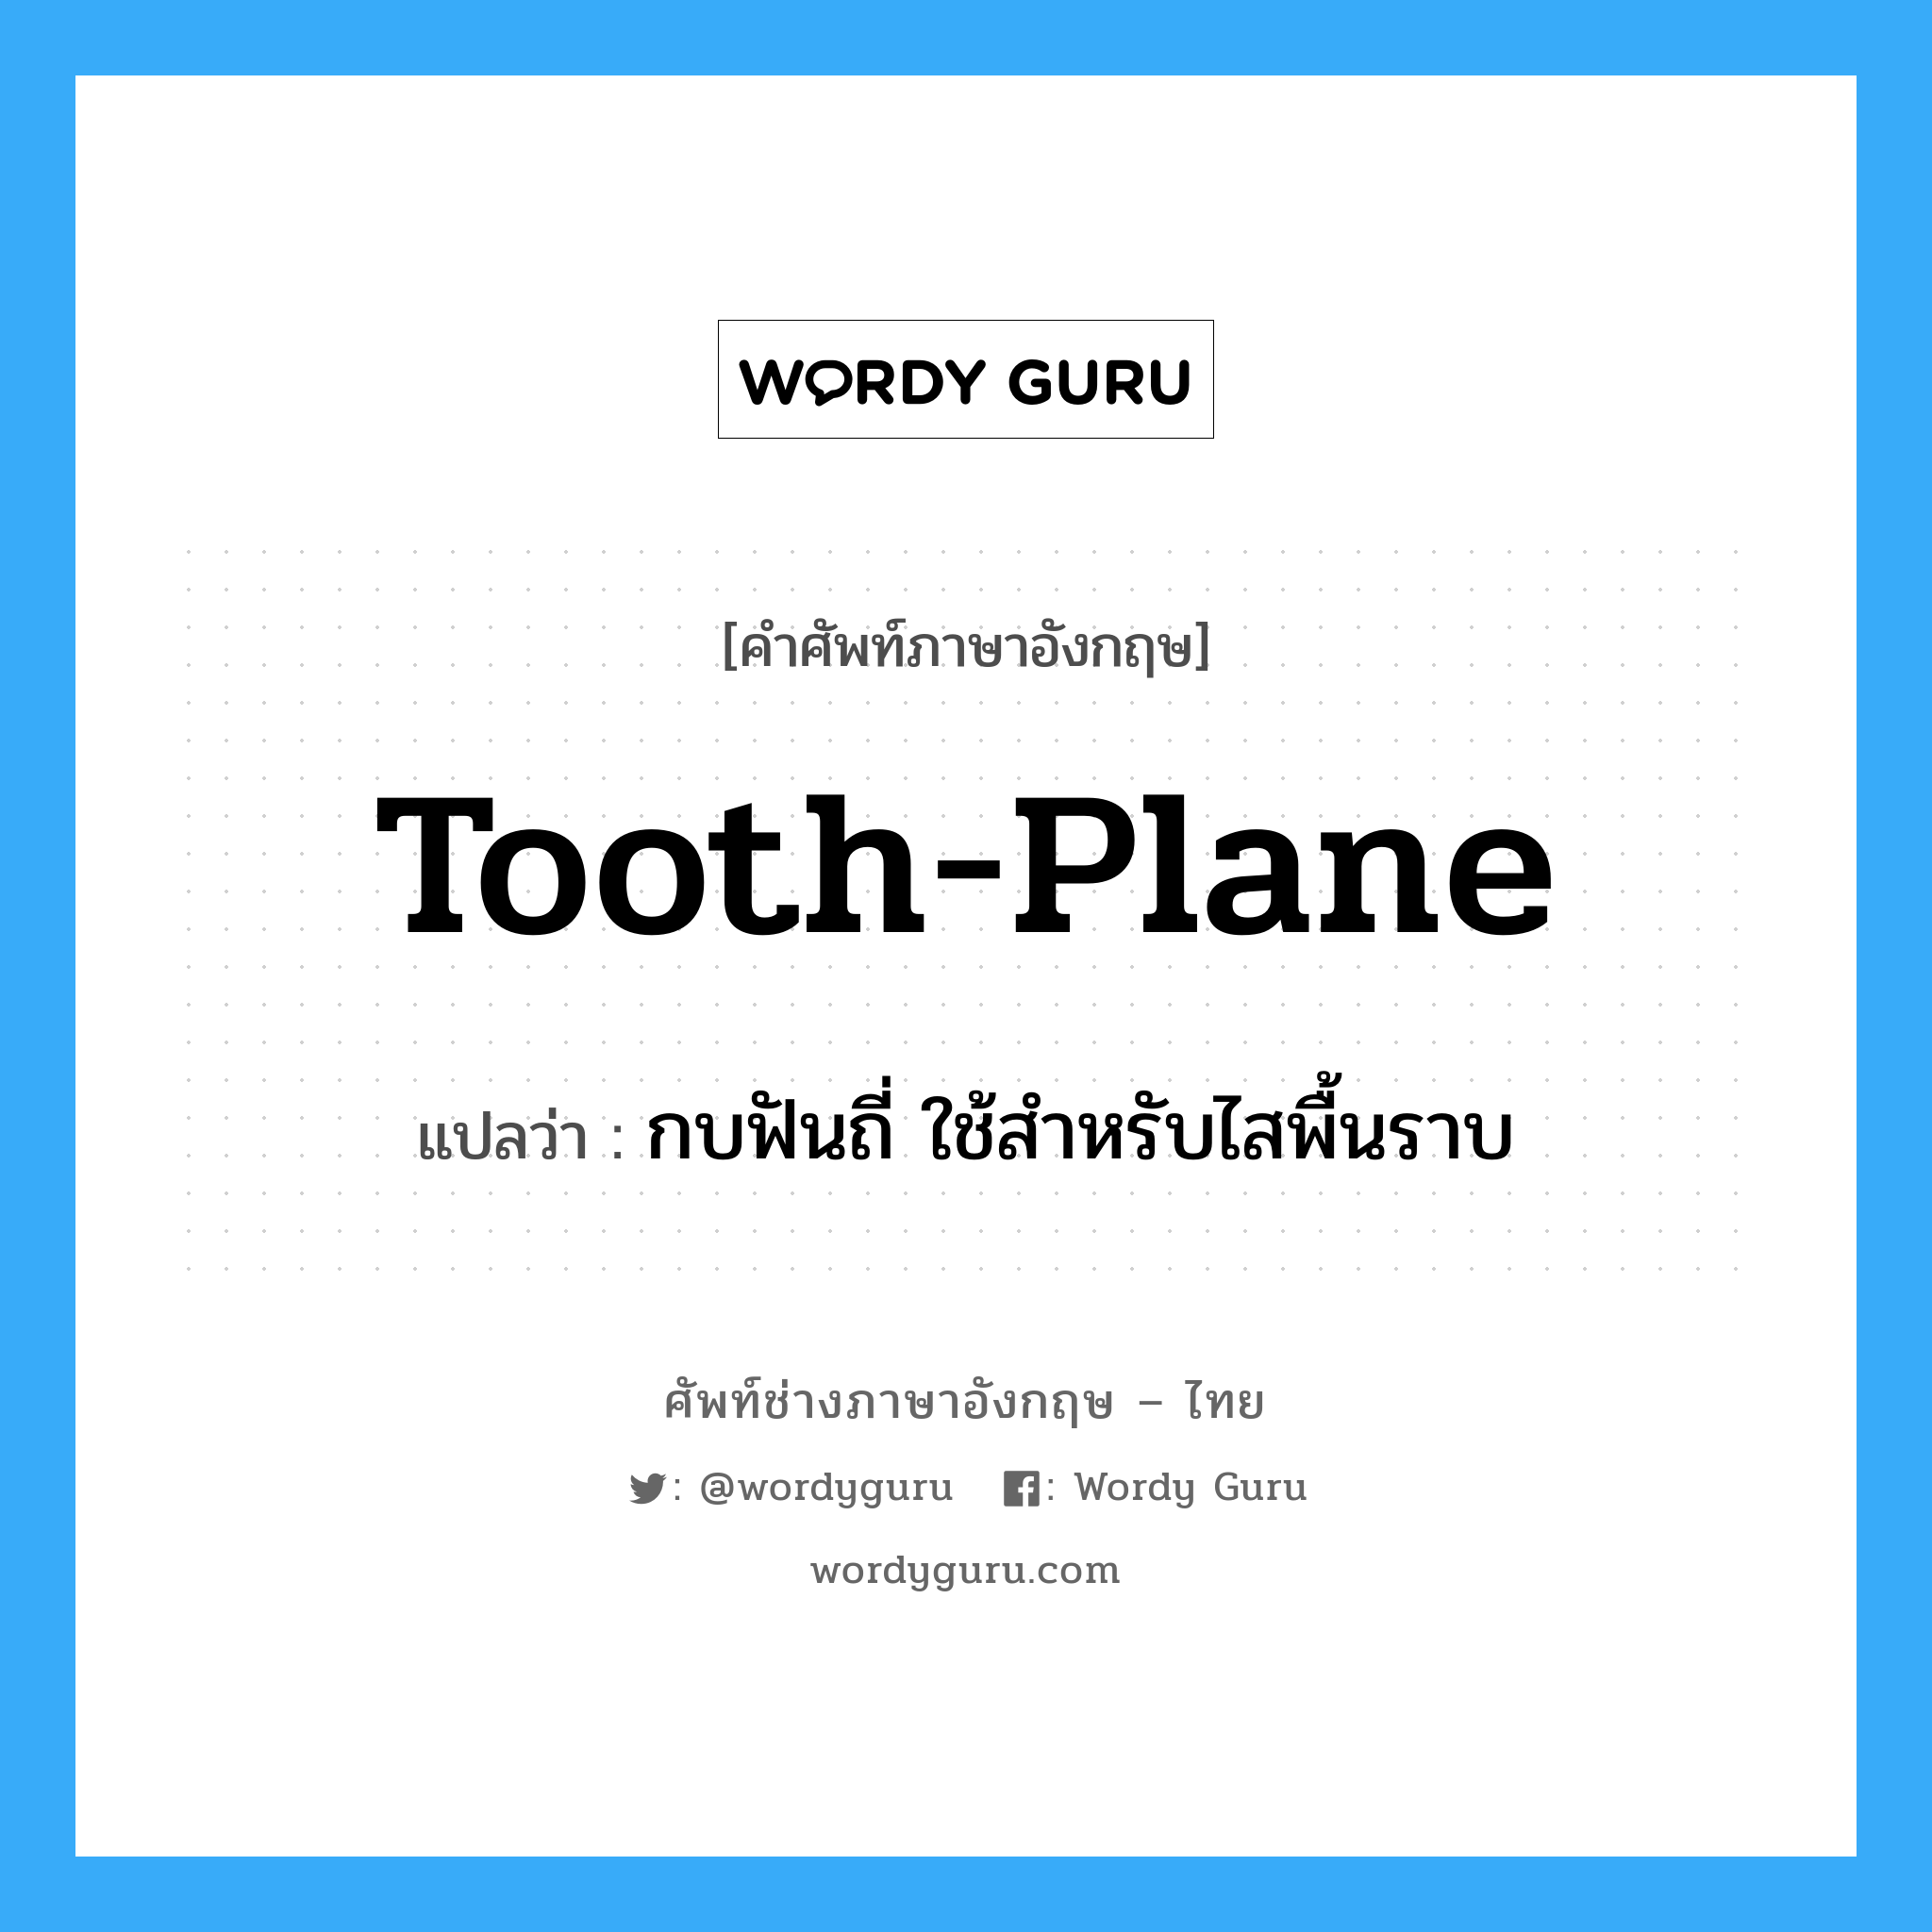 tooth-plane แปลว่า?, คำศัพท์ช่างภาษาอังกฤษ - ไทย tooth-plane คำศัพท์ภาษาอังกฤษ tooth-plane แปลว่า กบฟันถี่ ใช้สำหรับไสพื้นราบ